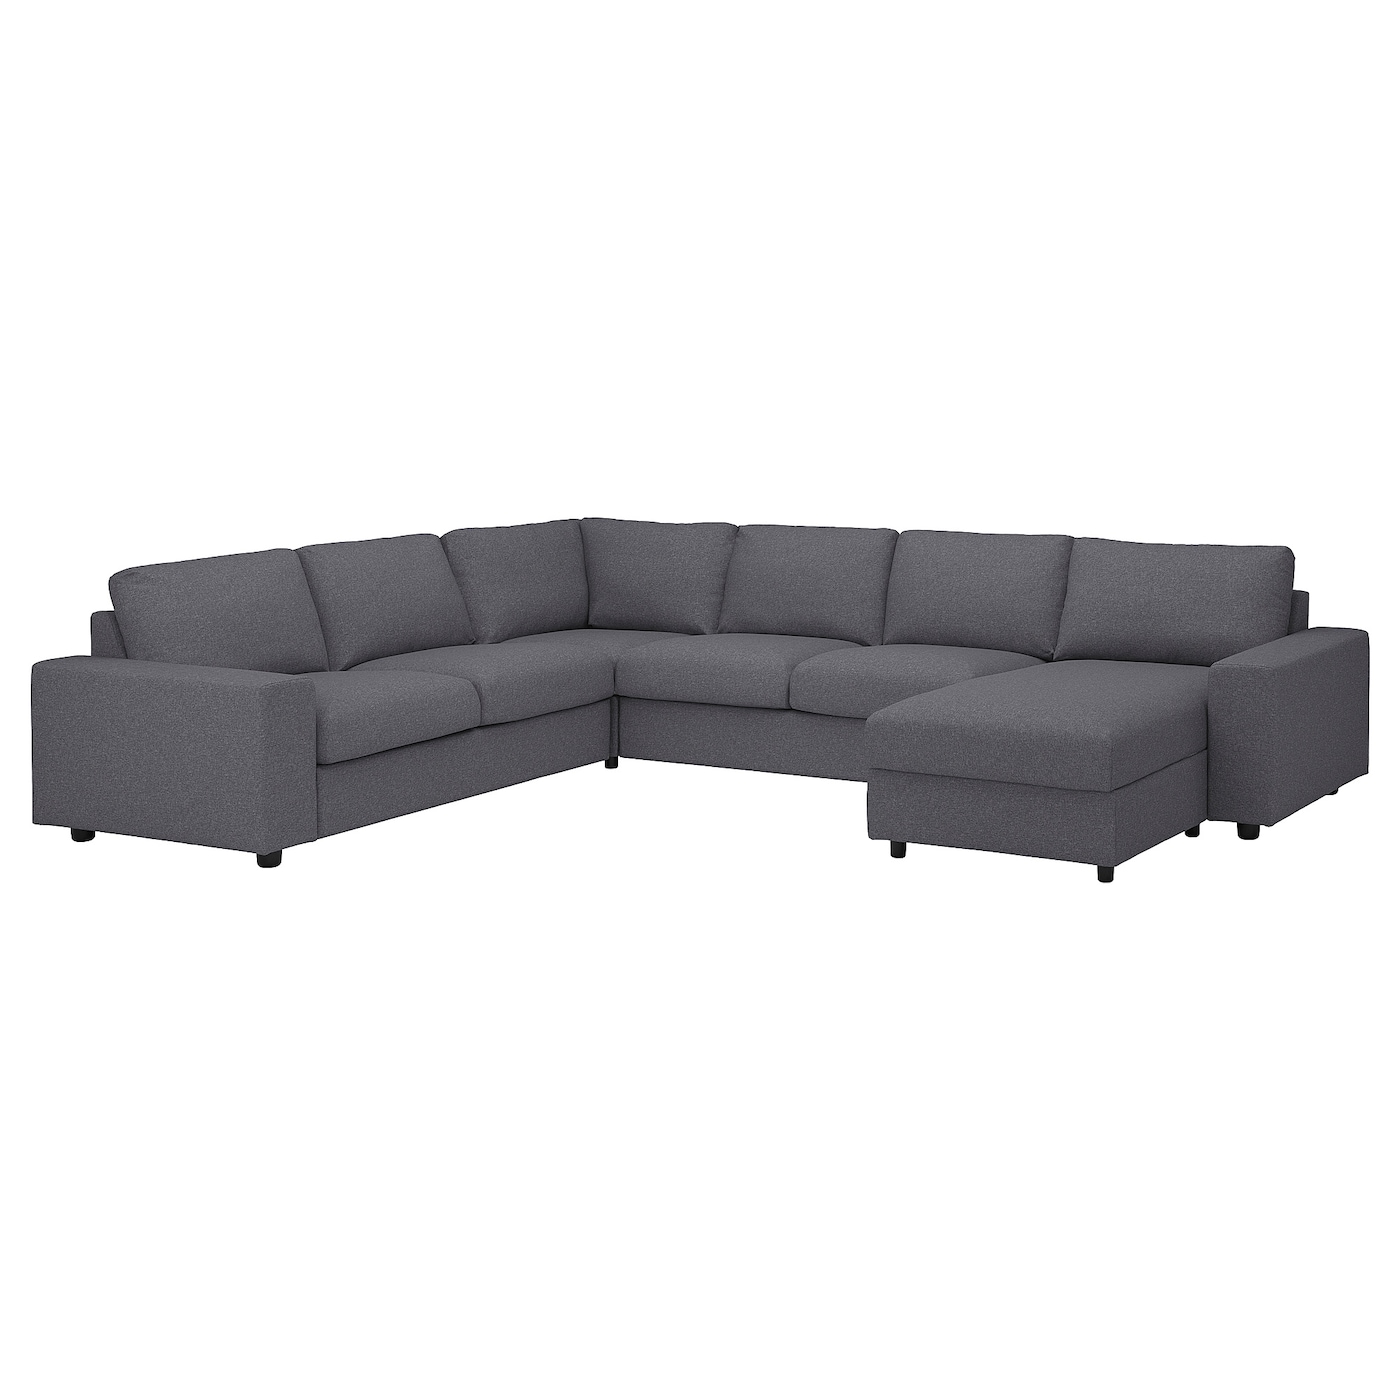 ВИМЛЕ Диван угловой, 5-местный. диван+диван, с широкими подлокотниками/Гуннаред средний серый VIMLE IKEA цена и фото